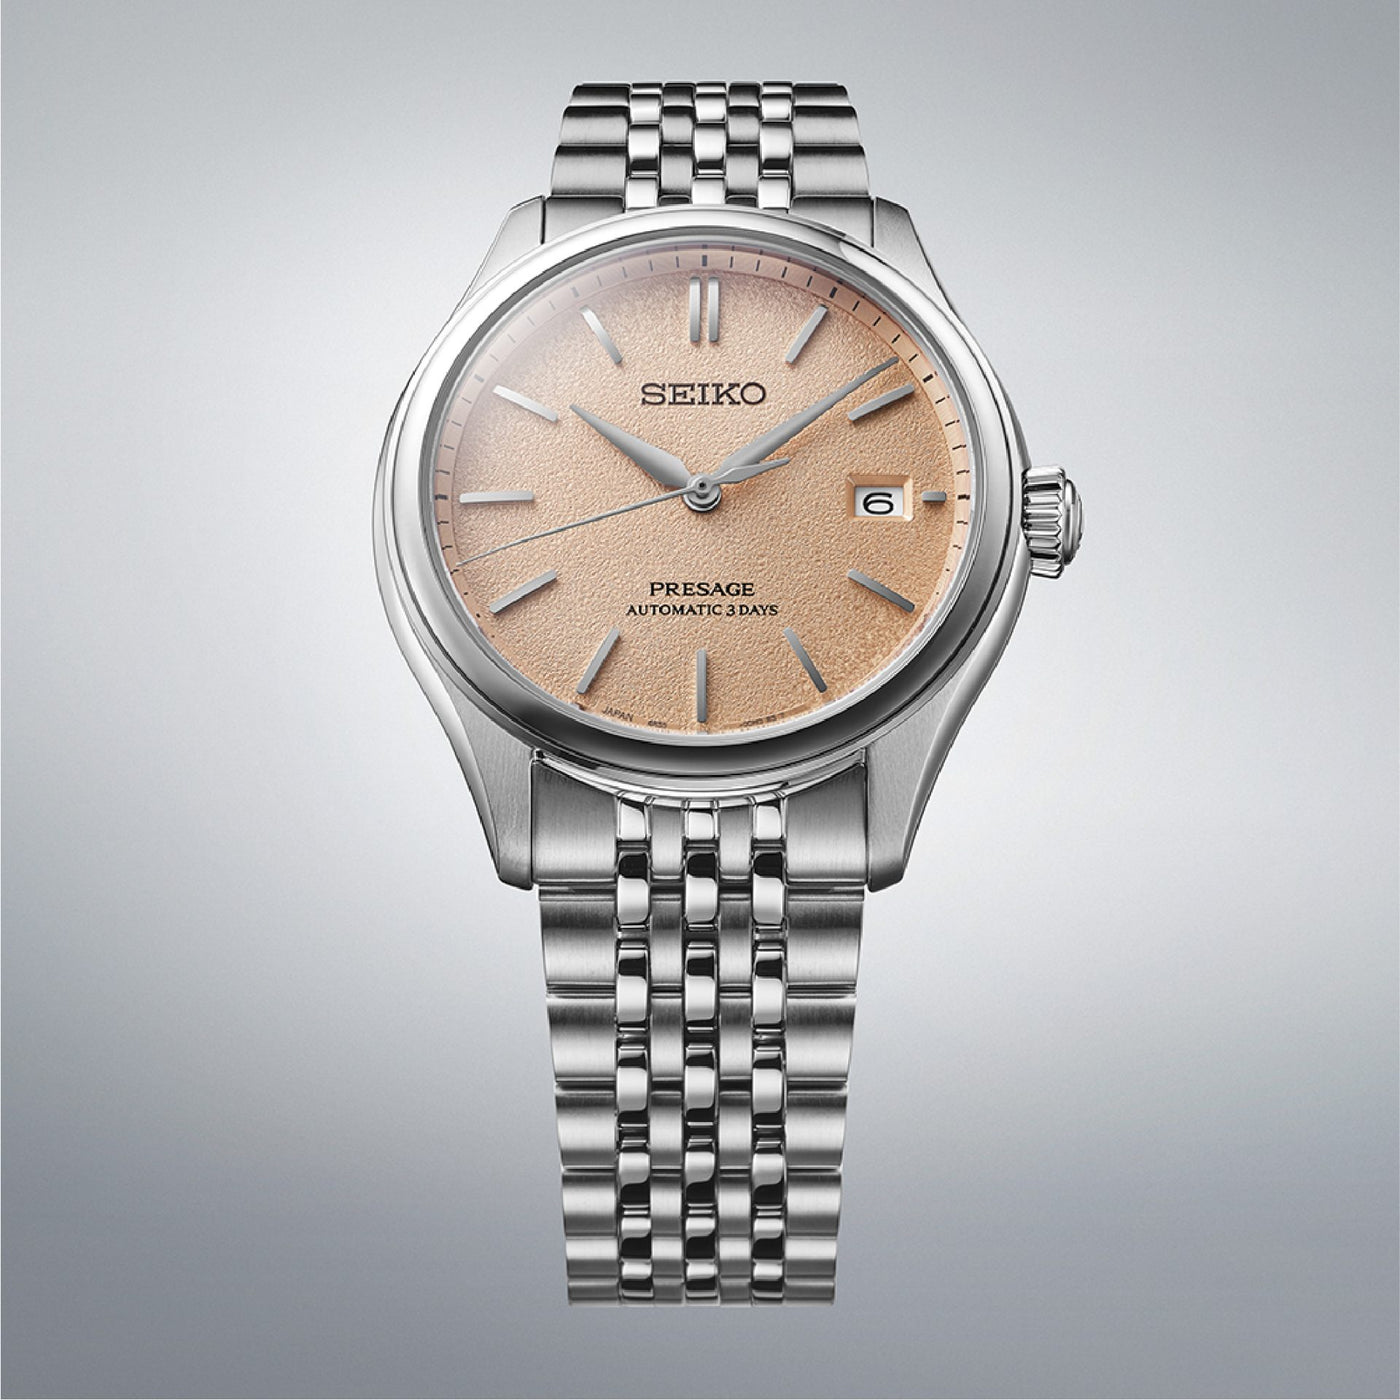 Seiko (ไซโก) นาฬิกาข้อมือ Presage Classic Series รุ่น SPB467J ระบบอัตโนมัติ ขนาดตัวเรือน 40.20 มม.